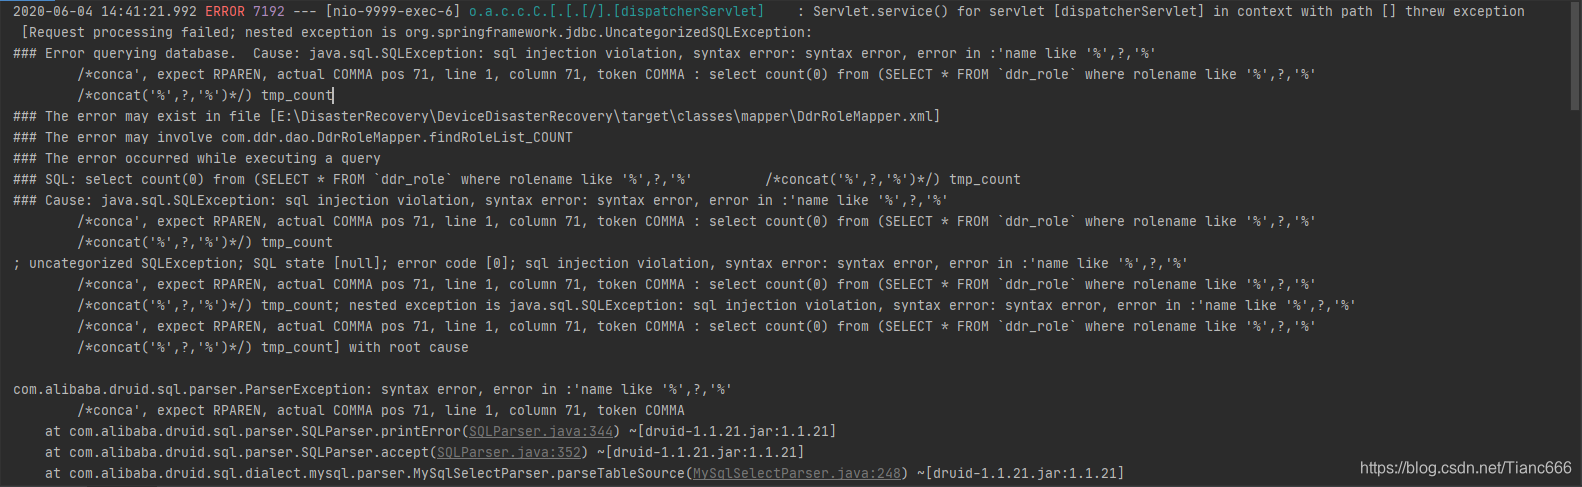 Springboot集成Druid,sql报错 Error querying database.  Cause: java.sql.SQLException: